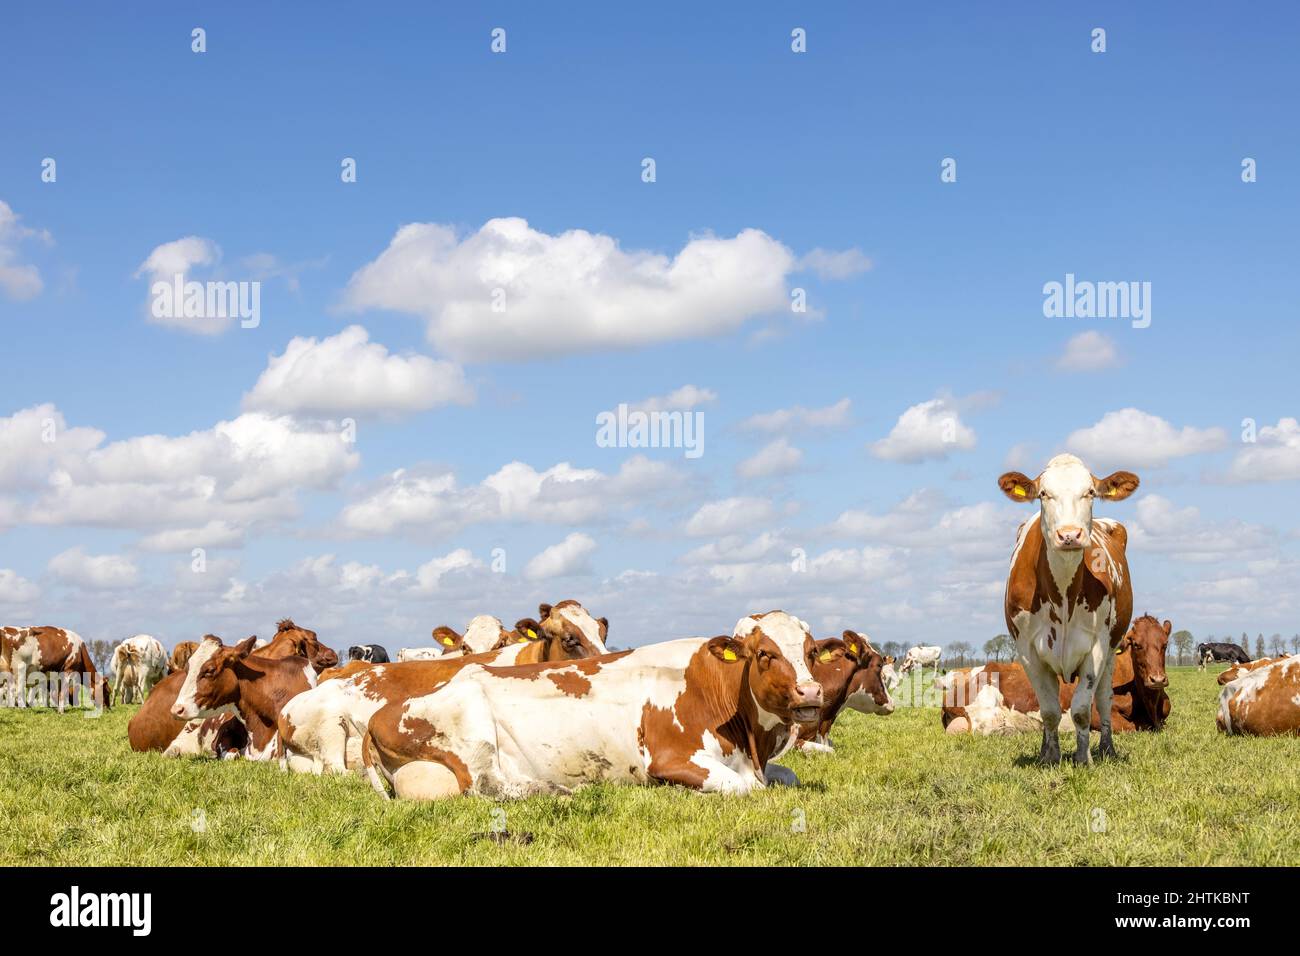 Groupez les vaches couchées et debout dans la grande herbe d'un pré vert, une vache franc, le troupeau côte à côte confortable ensemble sous un ciel bleu nuageux Banque D'Images